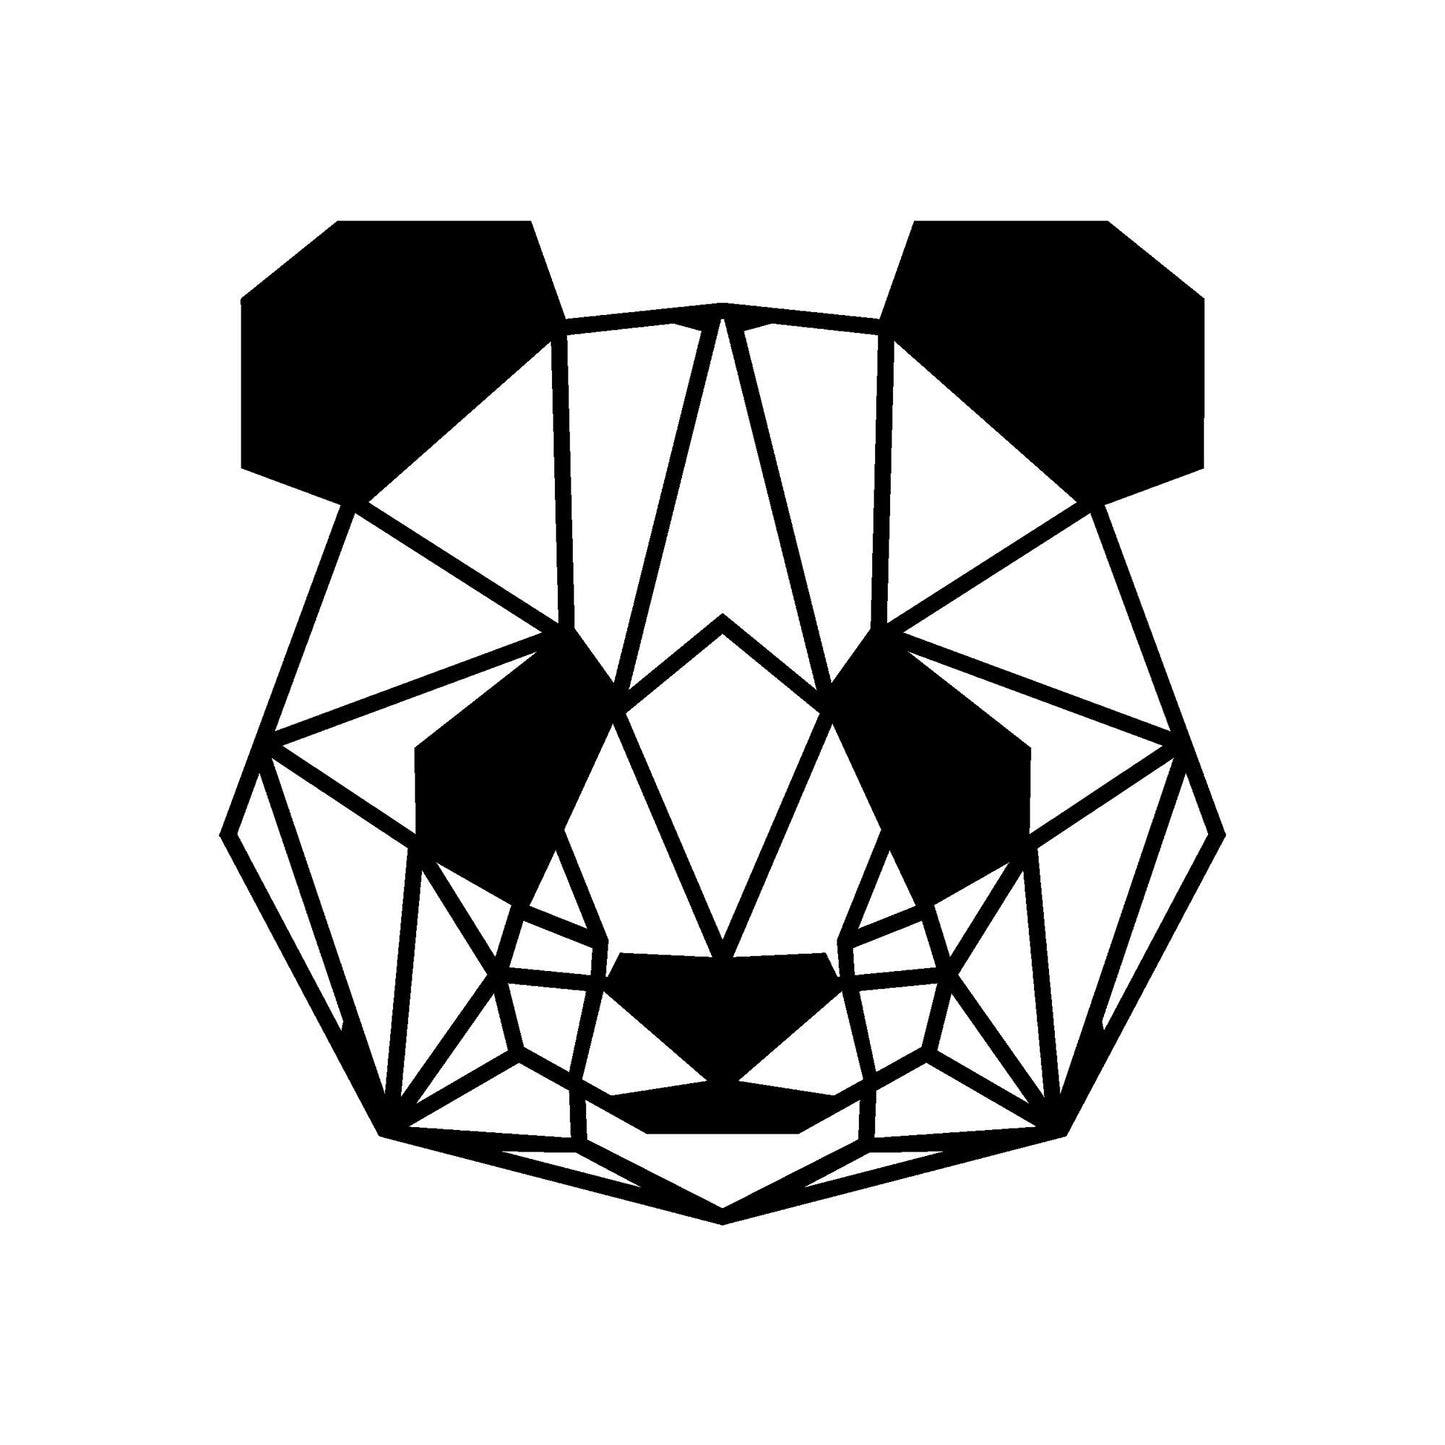 Panda - Sort - Dekorativt metalvægtilbehør